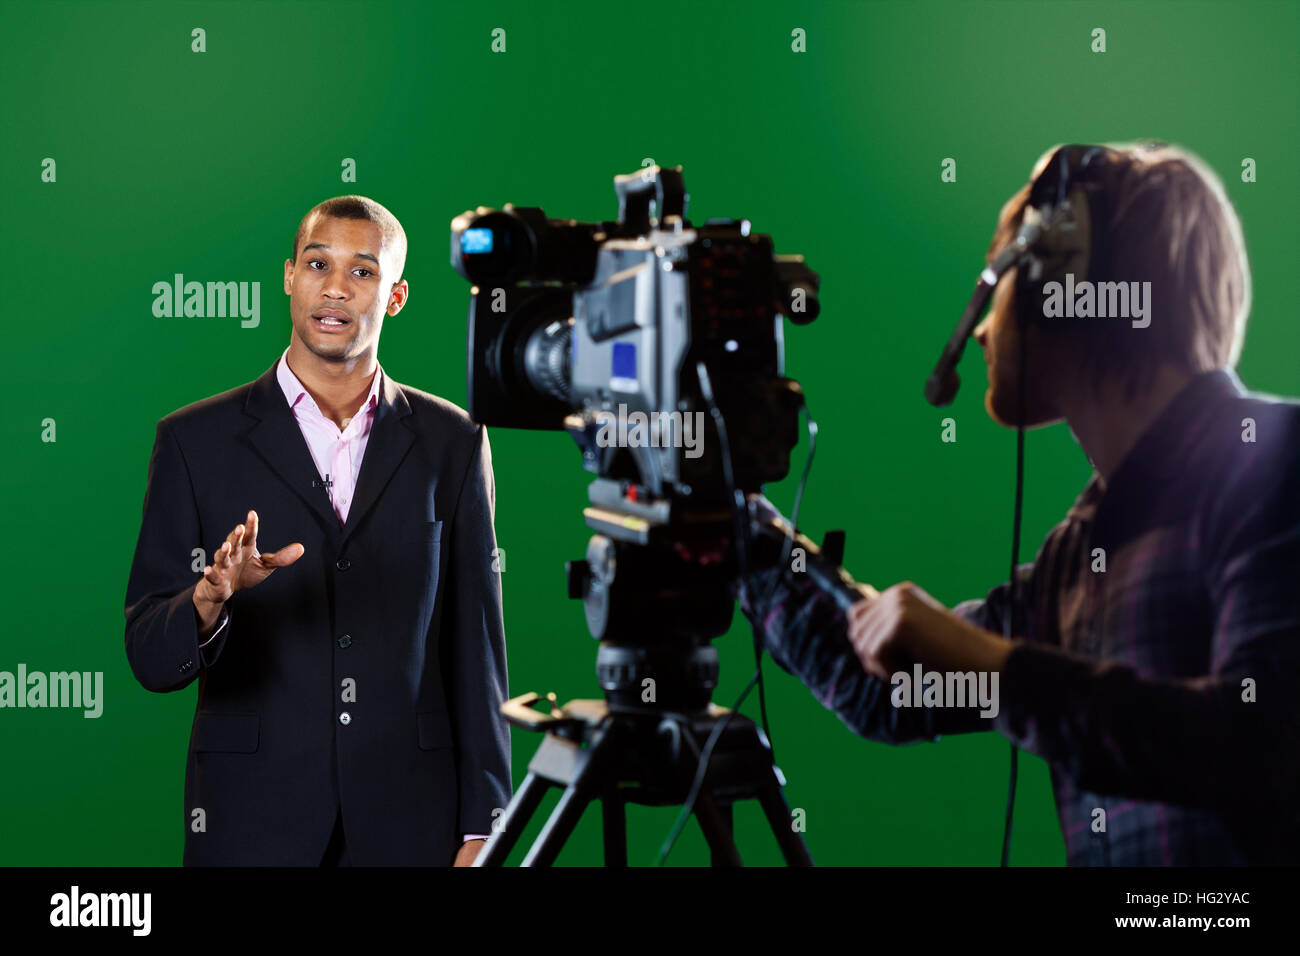 Eine TV-Moderatorin in einem TV-Studio mit einer Kamera und Betreiber unscharf im Vordergrund und einen grünen Bildschirm im Hintergrund. Stockfoto